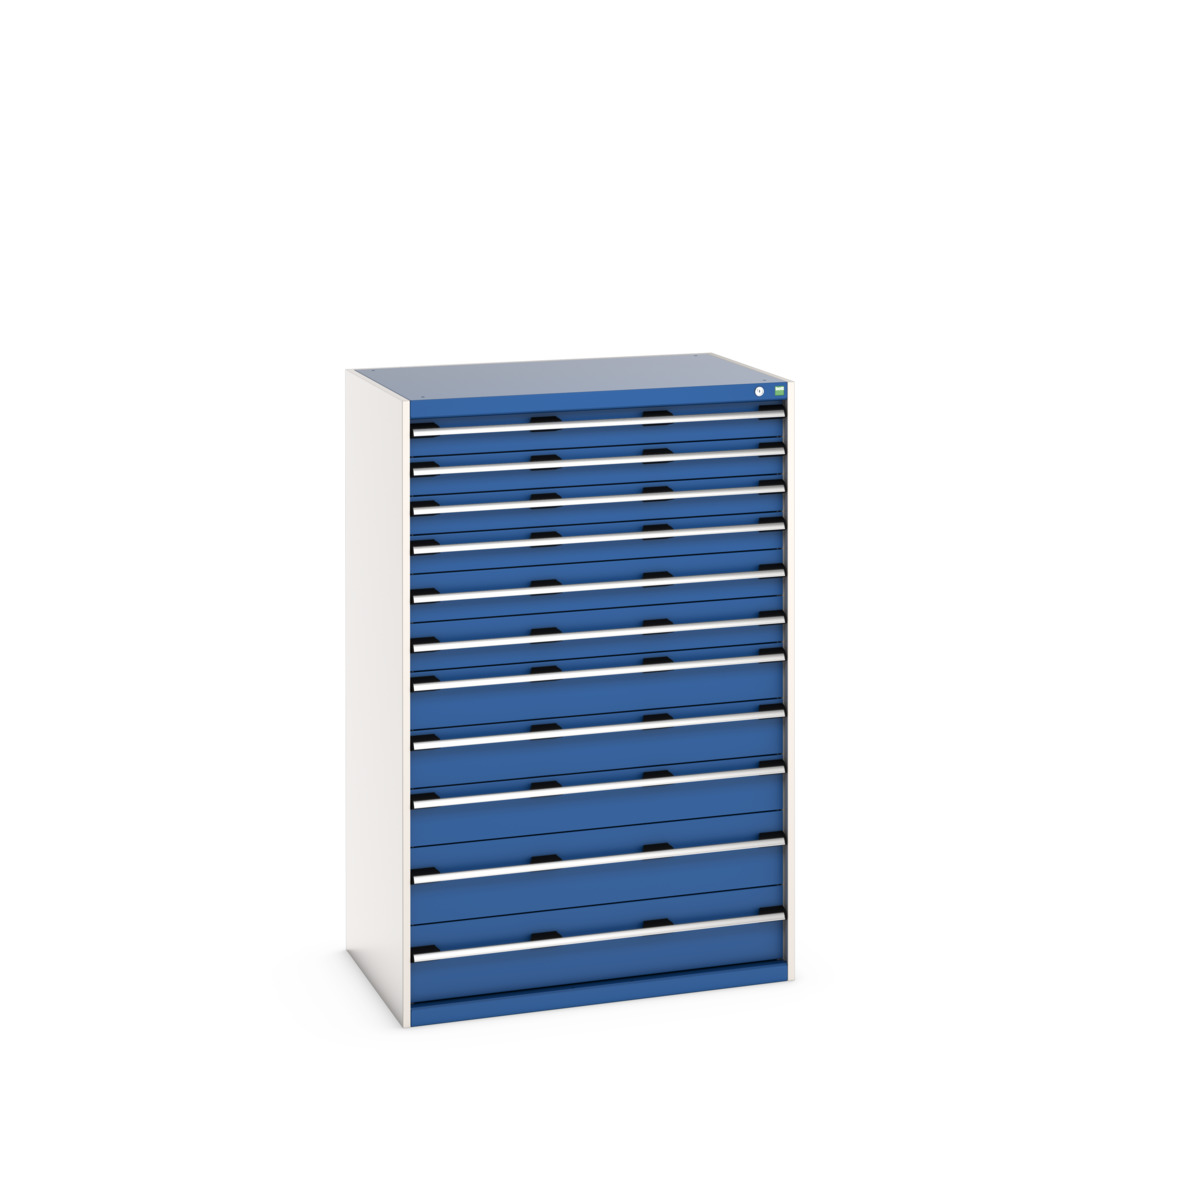 40029038.11V - cubio drawer cabinet